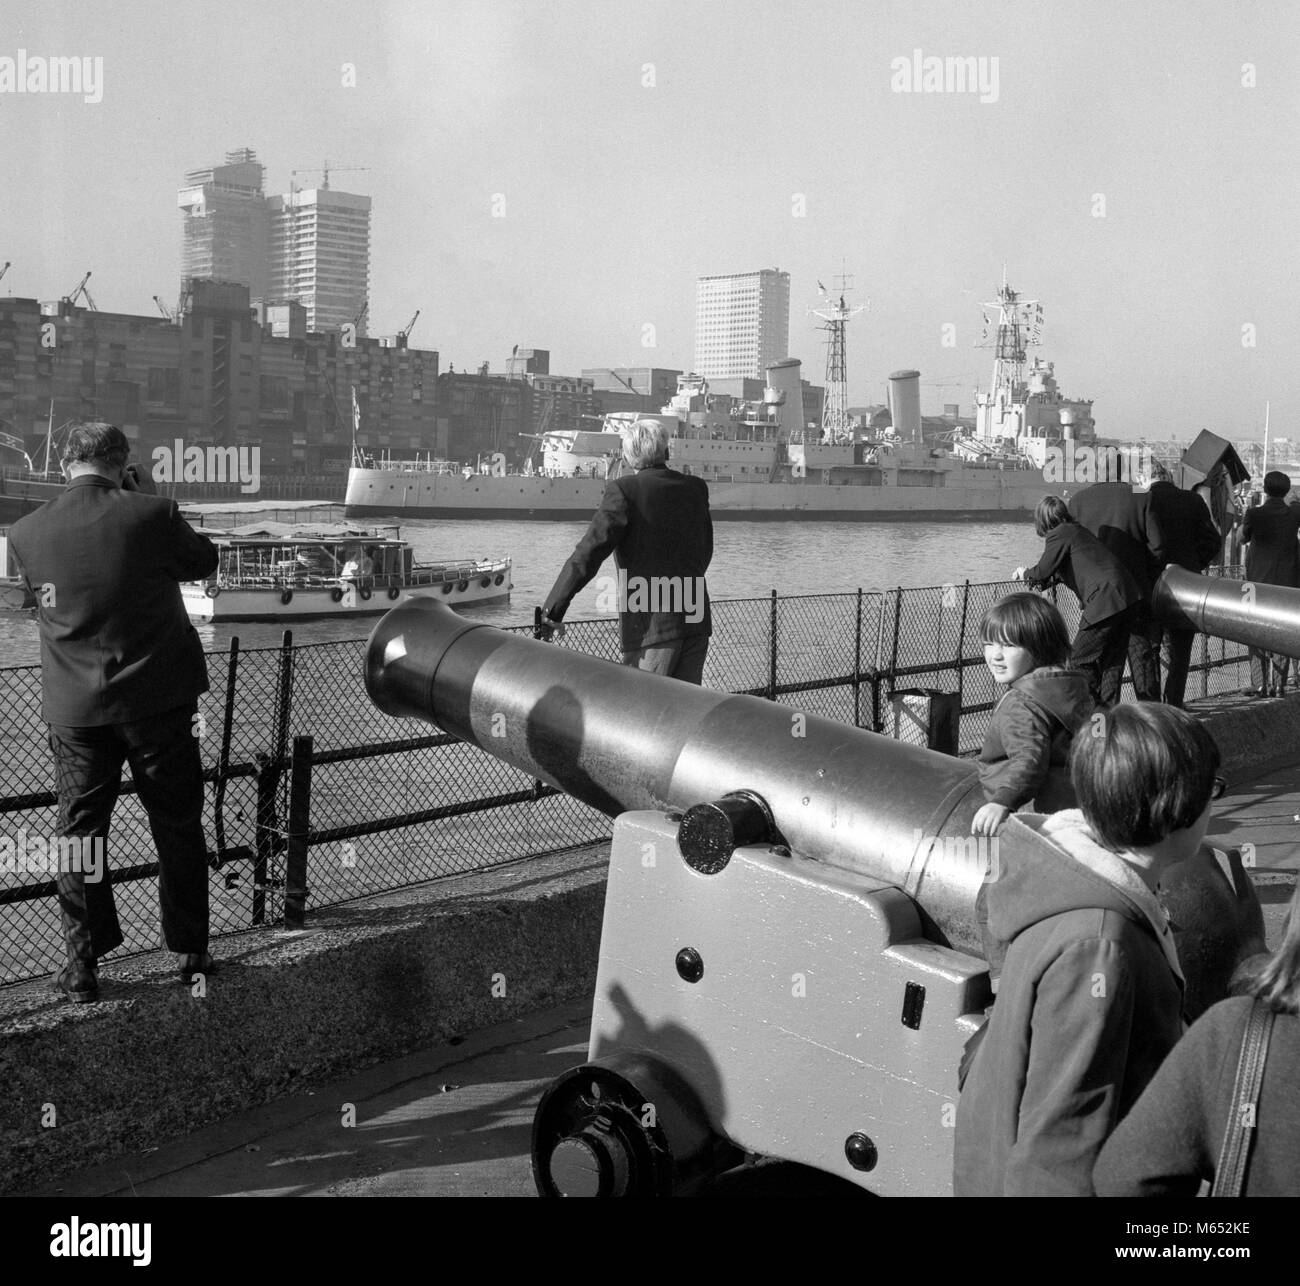 Les Londoniens s'en tenir à l'vieux fusils de la Tour de Londres pour donner la bienvenue à HMS Belfast, après qu'elle avait passé par le Tower Bridge à son amarrage finale pour devenir un musée flottant. Banque D'Images